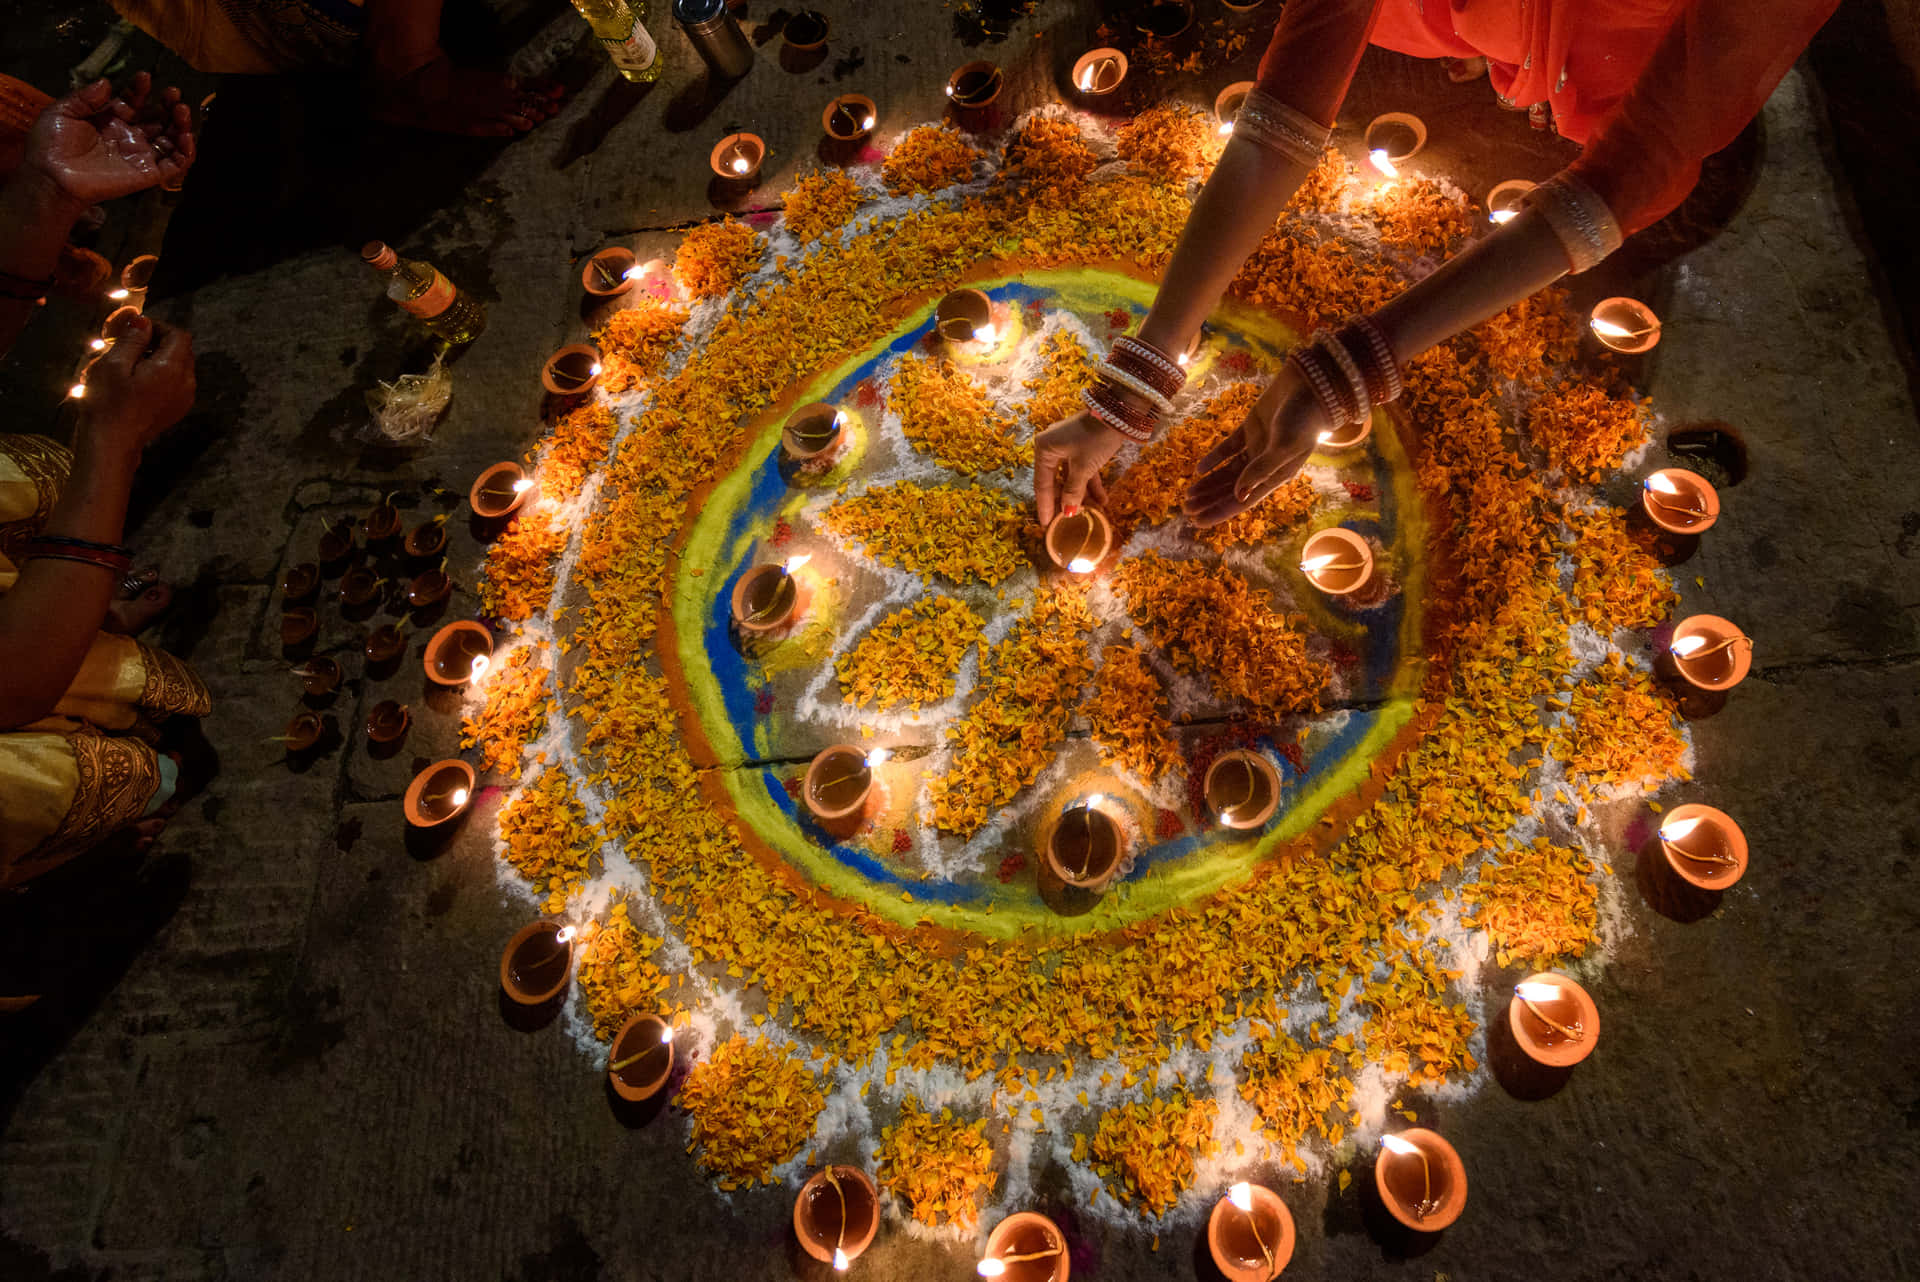 Condividigli Auguri Di Gioia E Prosperità In Questo Diwali.